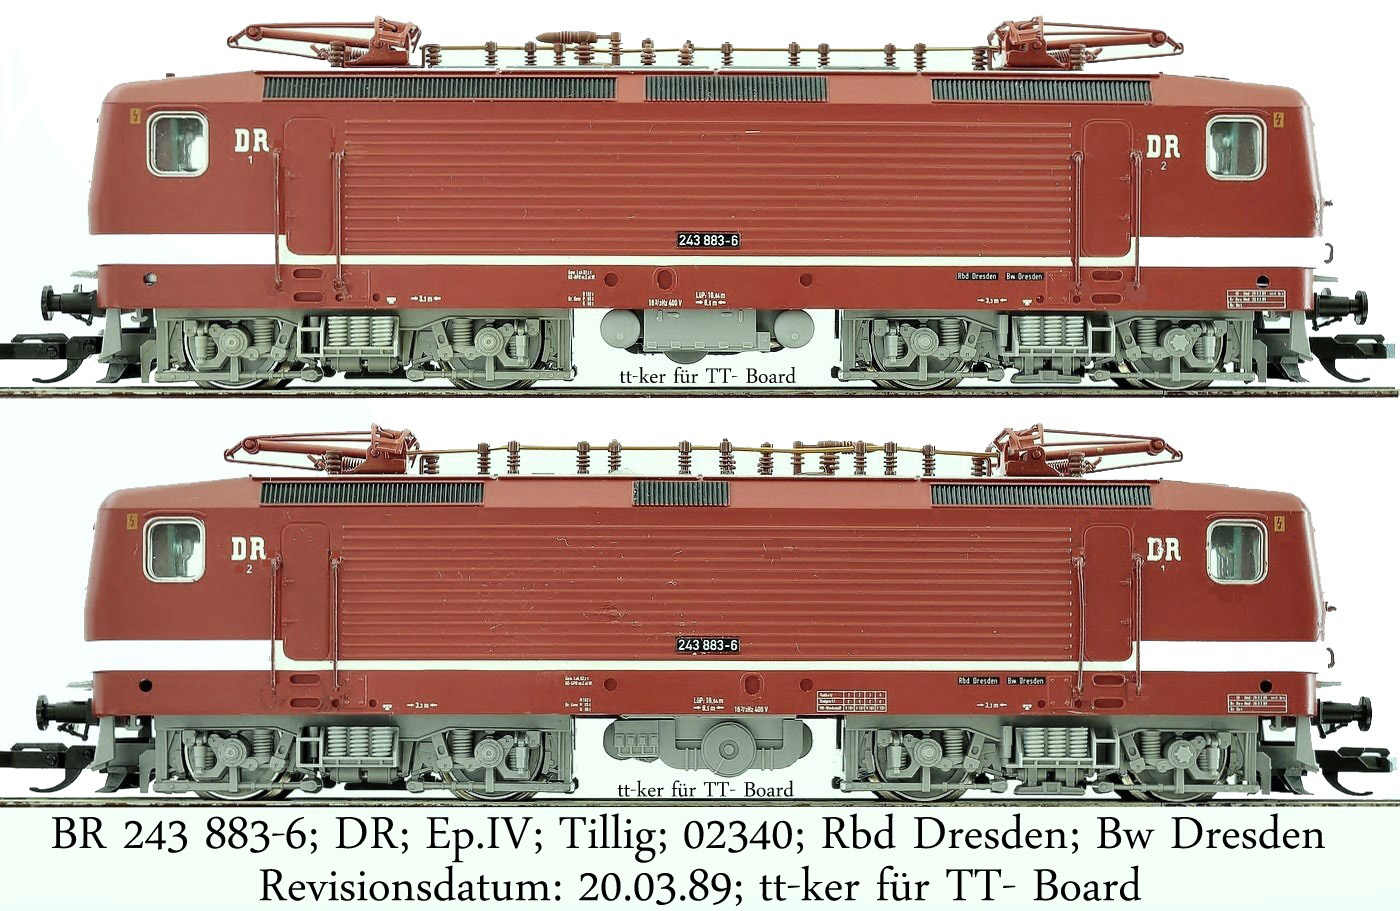 BR 243 883-6; DR; Ep.IV; Tillig; 02340; Rbd Dresden; Bw Dresden; Rev. 20.03.89